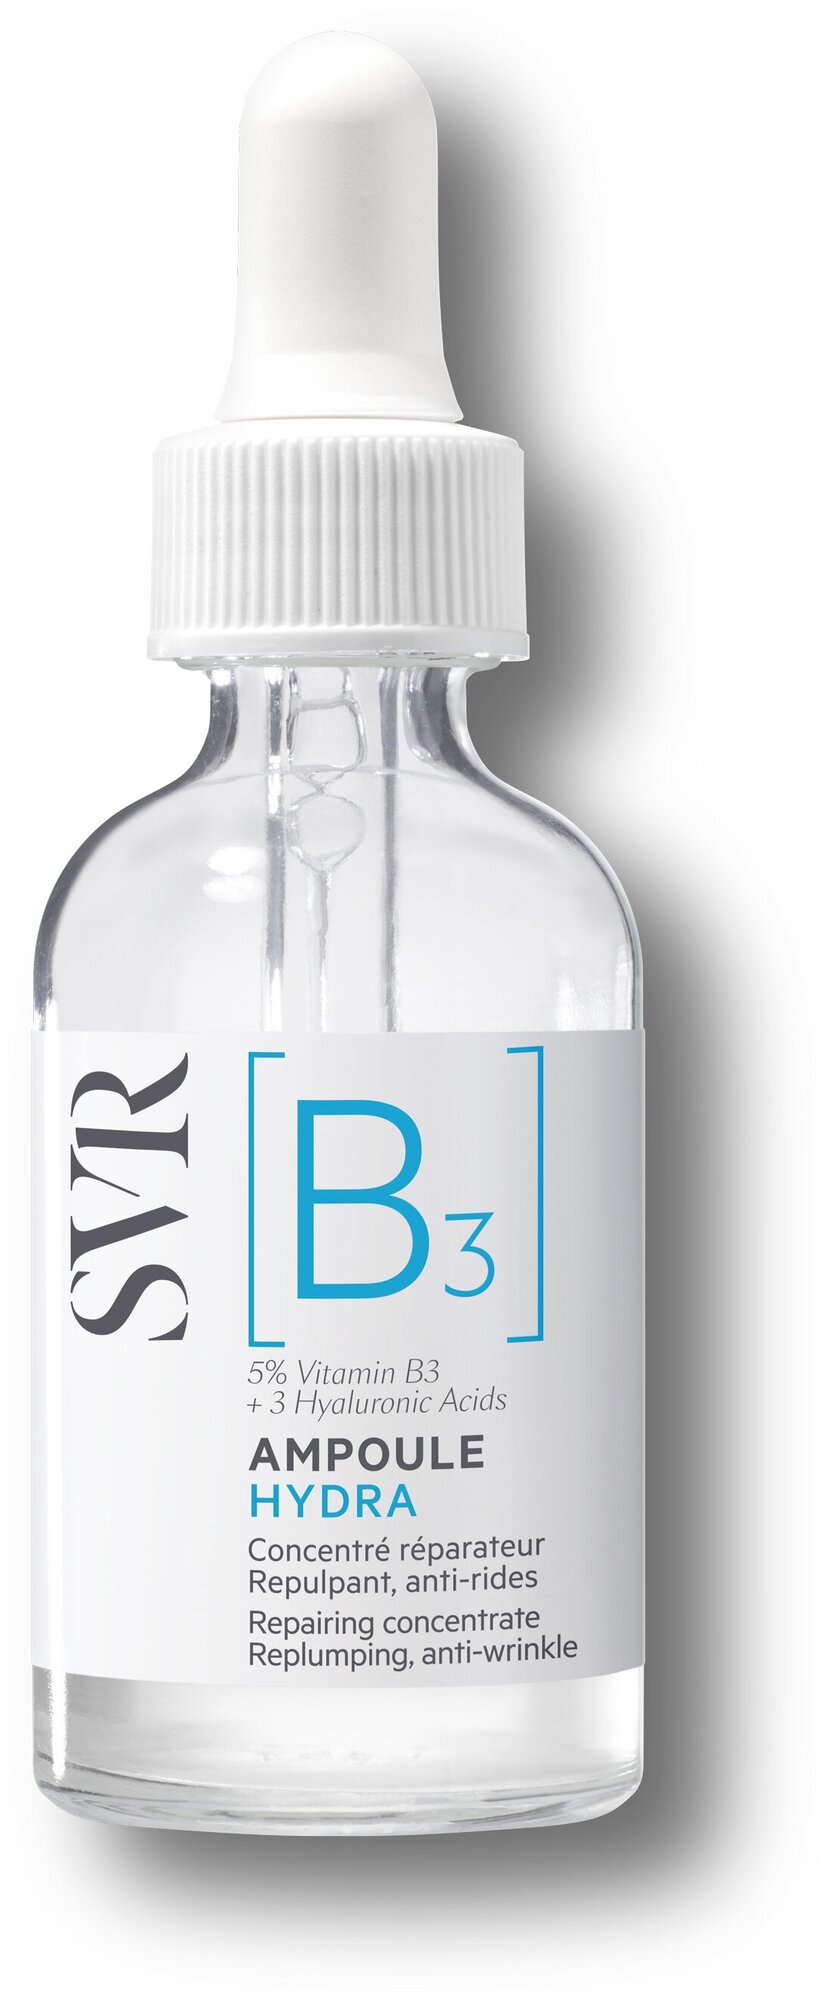 Svr b3 ampoule hydra отзывы прививка от бешенства и марихуана